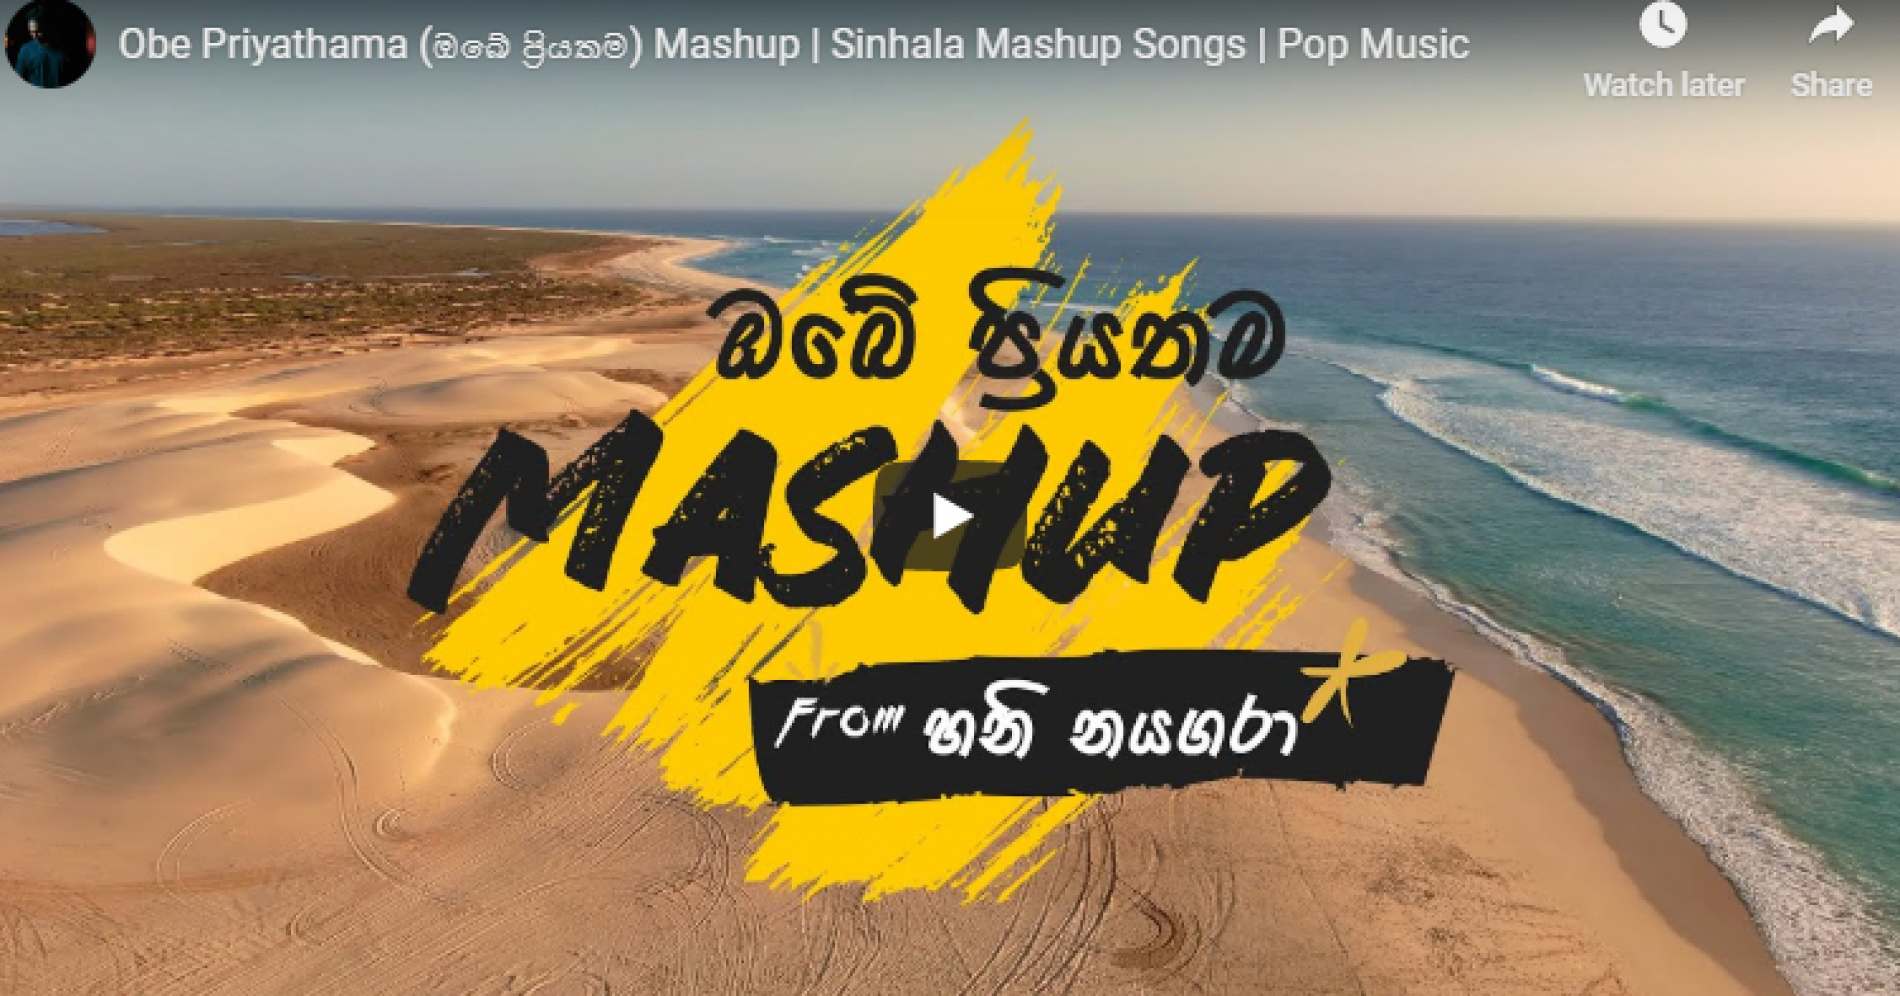 A.Honey Niagara – Obe Priyathama (ඔබේ ප්‍රියතම) Mashup | Sinhala Mashup Songs | Pop Music